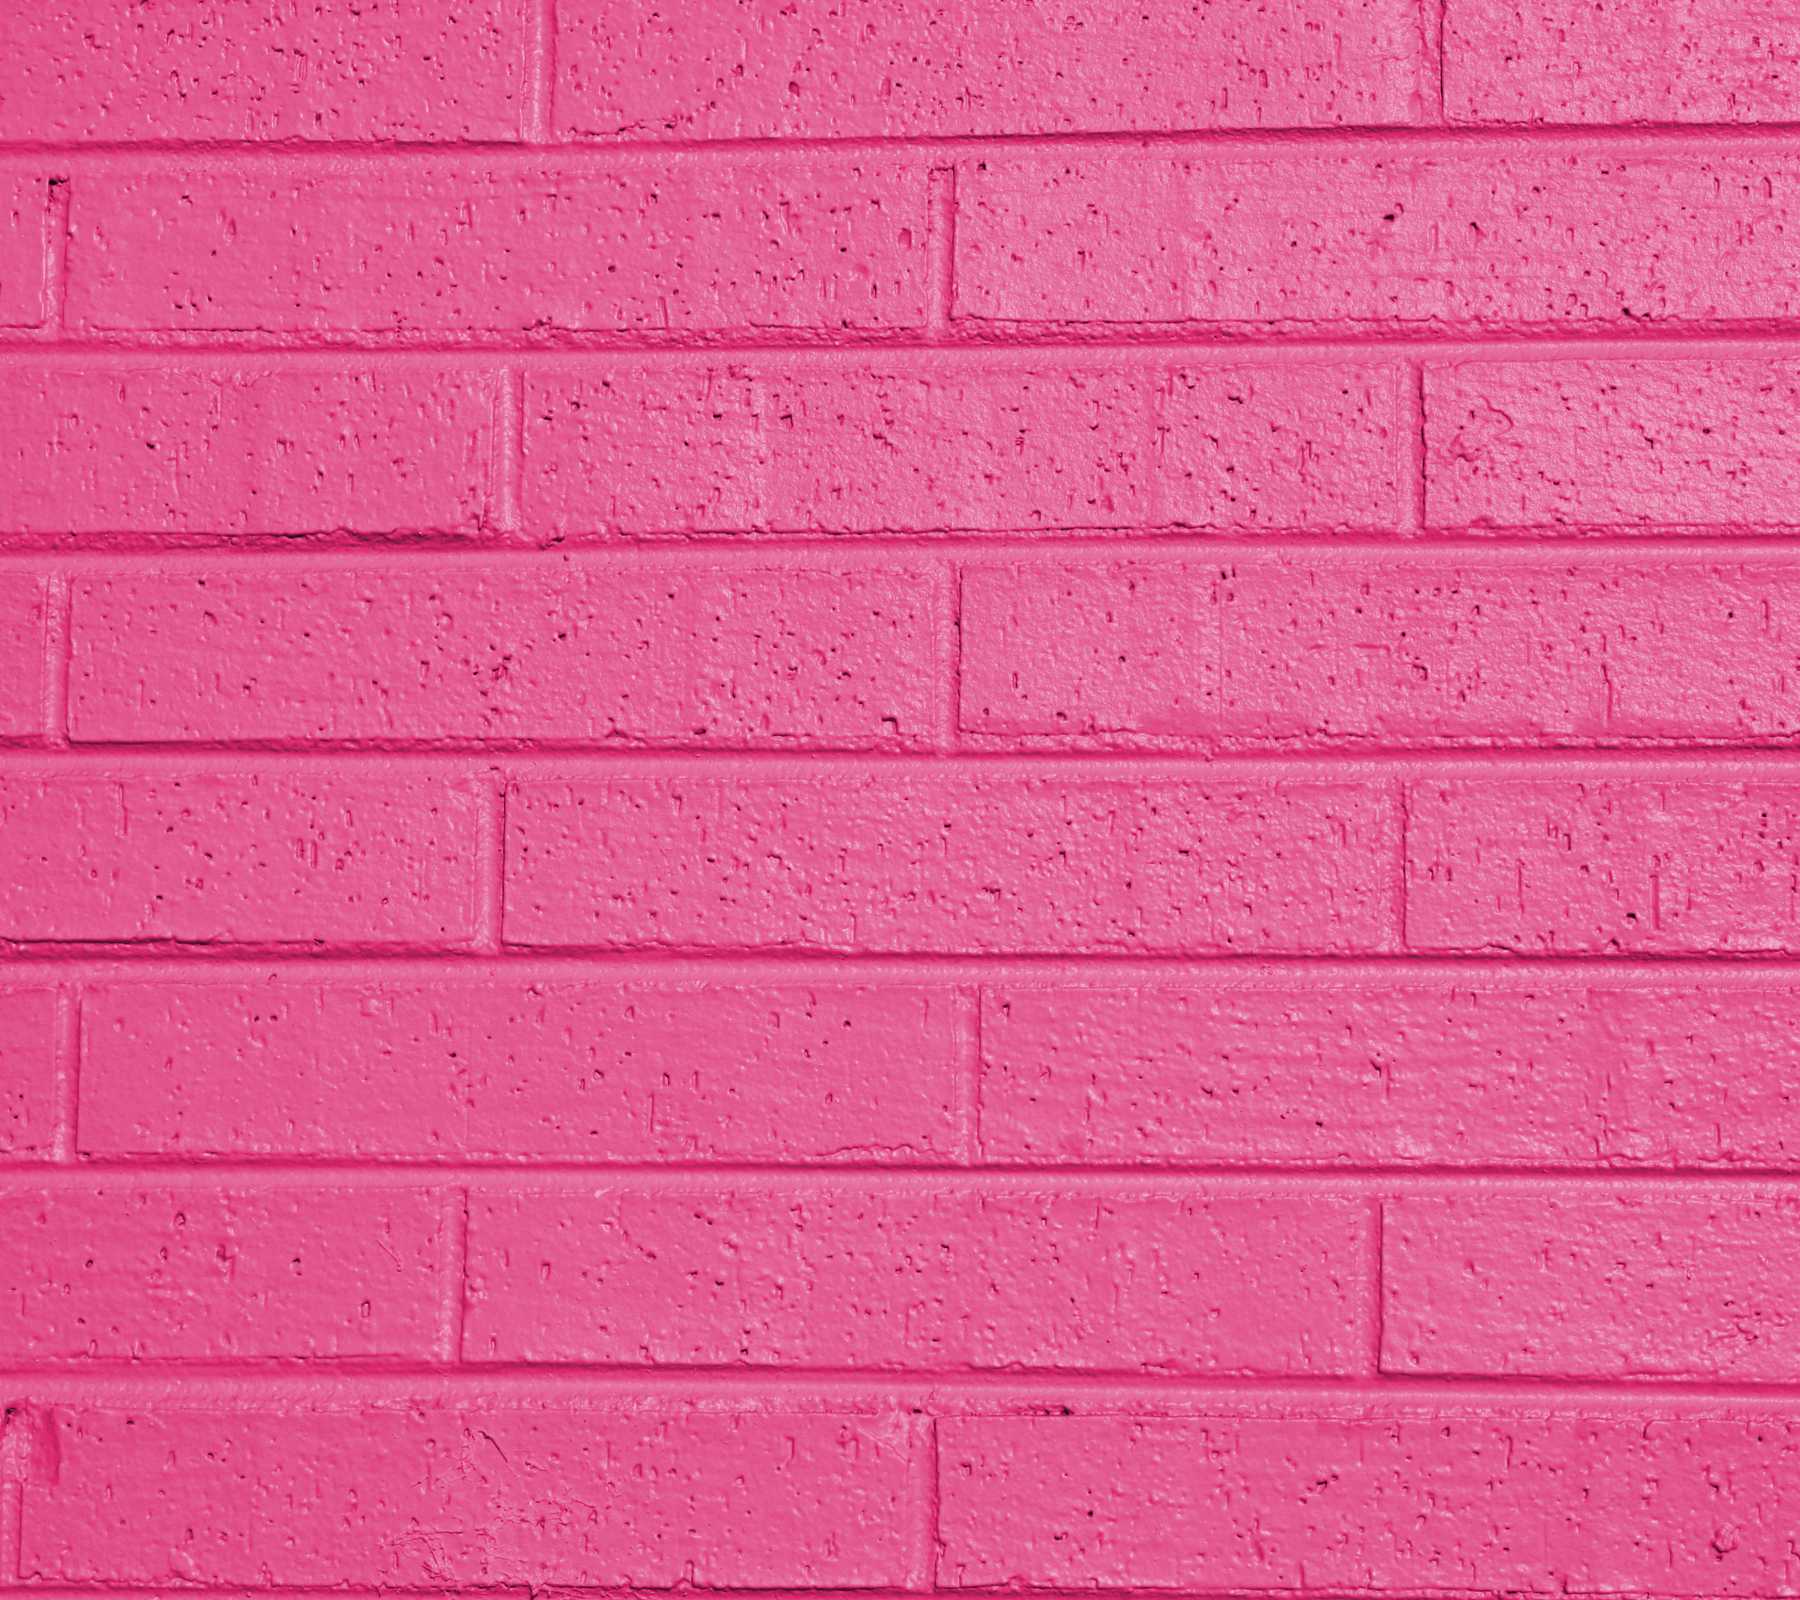 Pink HD wallpaper. pink image free download 2017